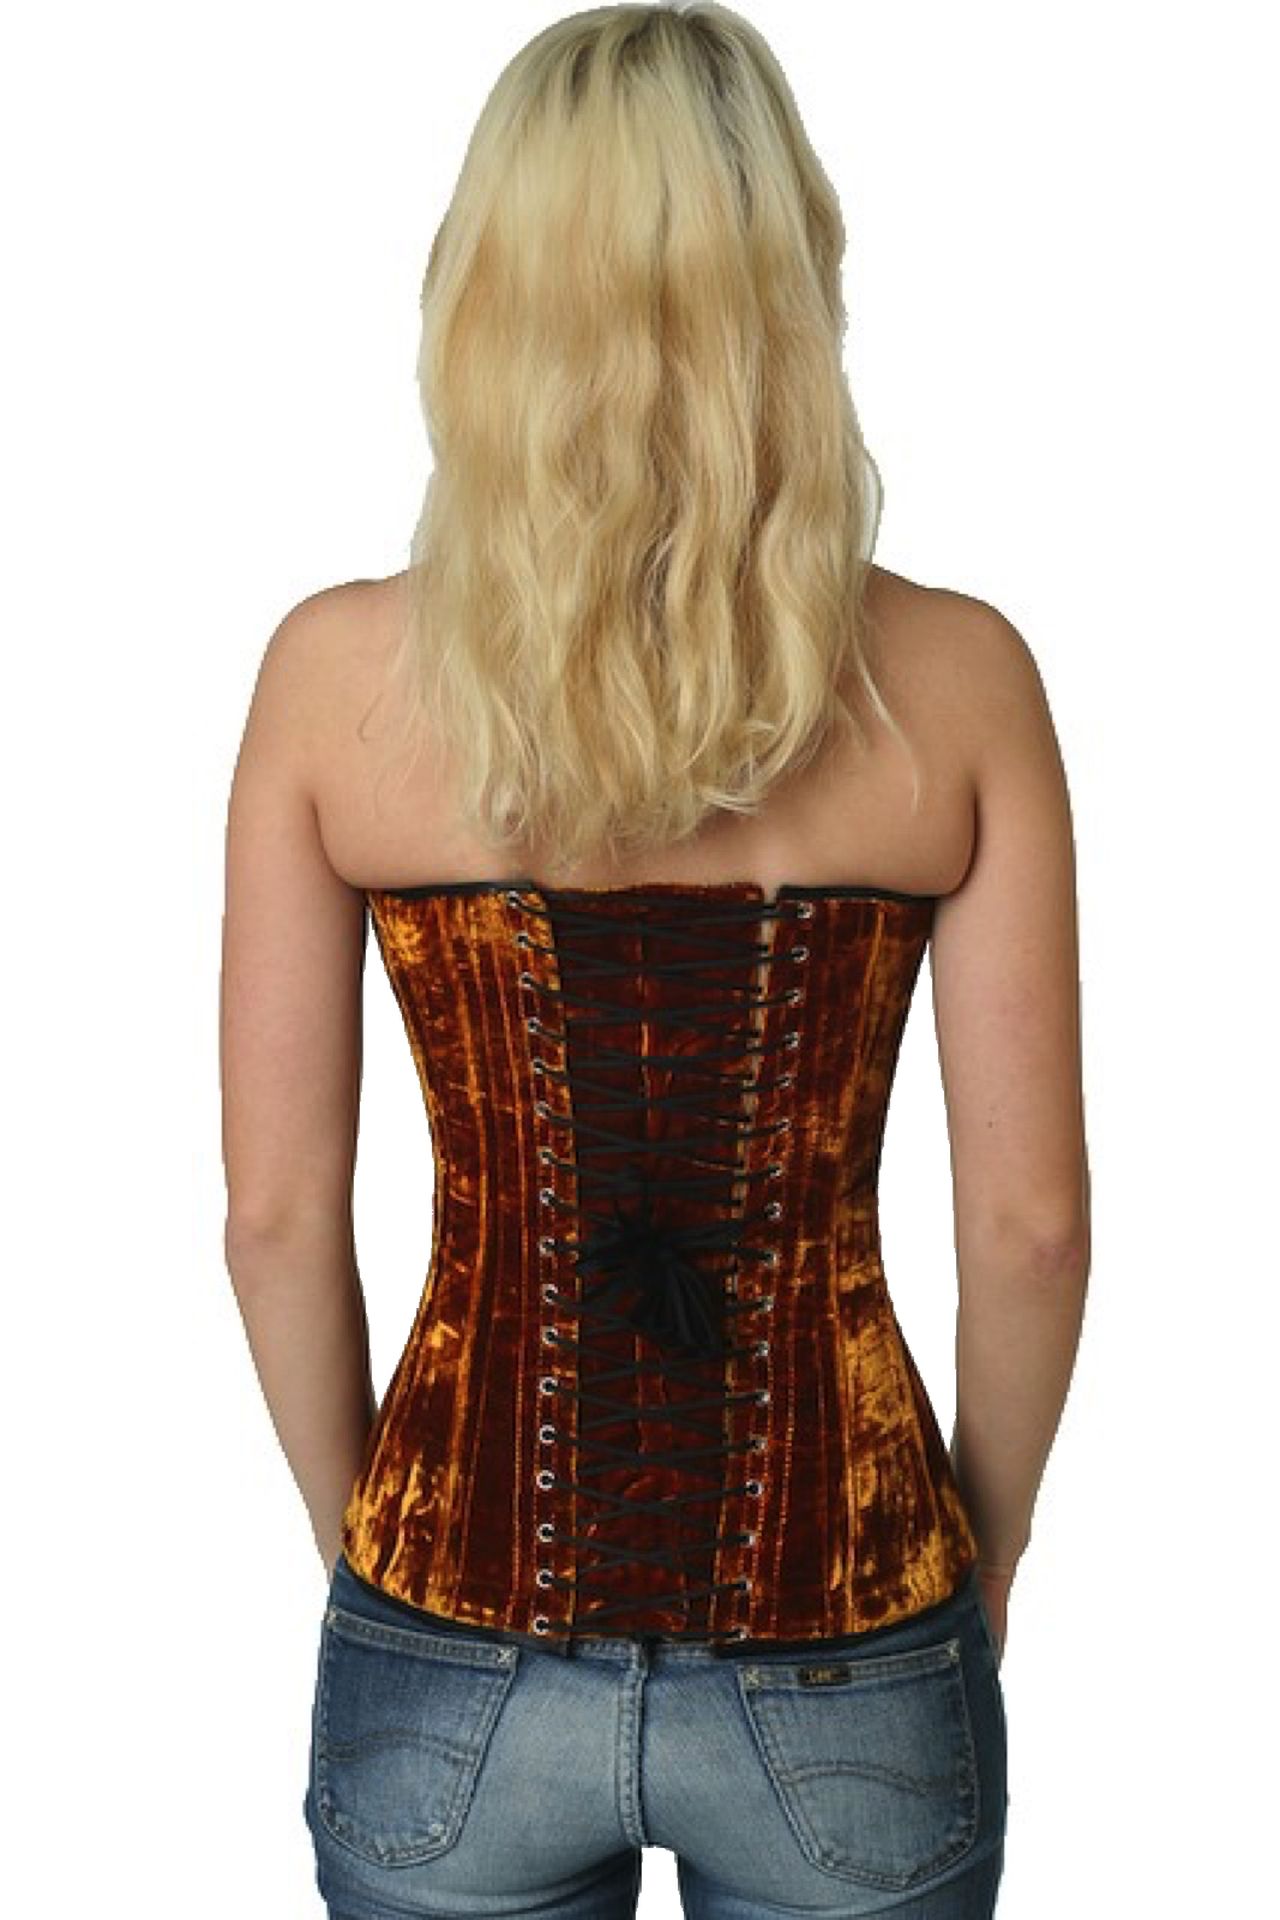 Fluweel corset goud volborst Korset vy64